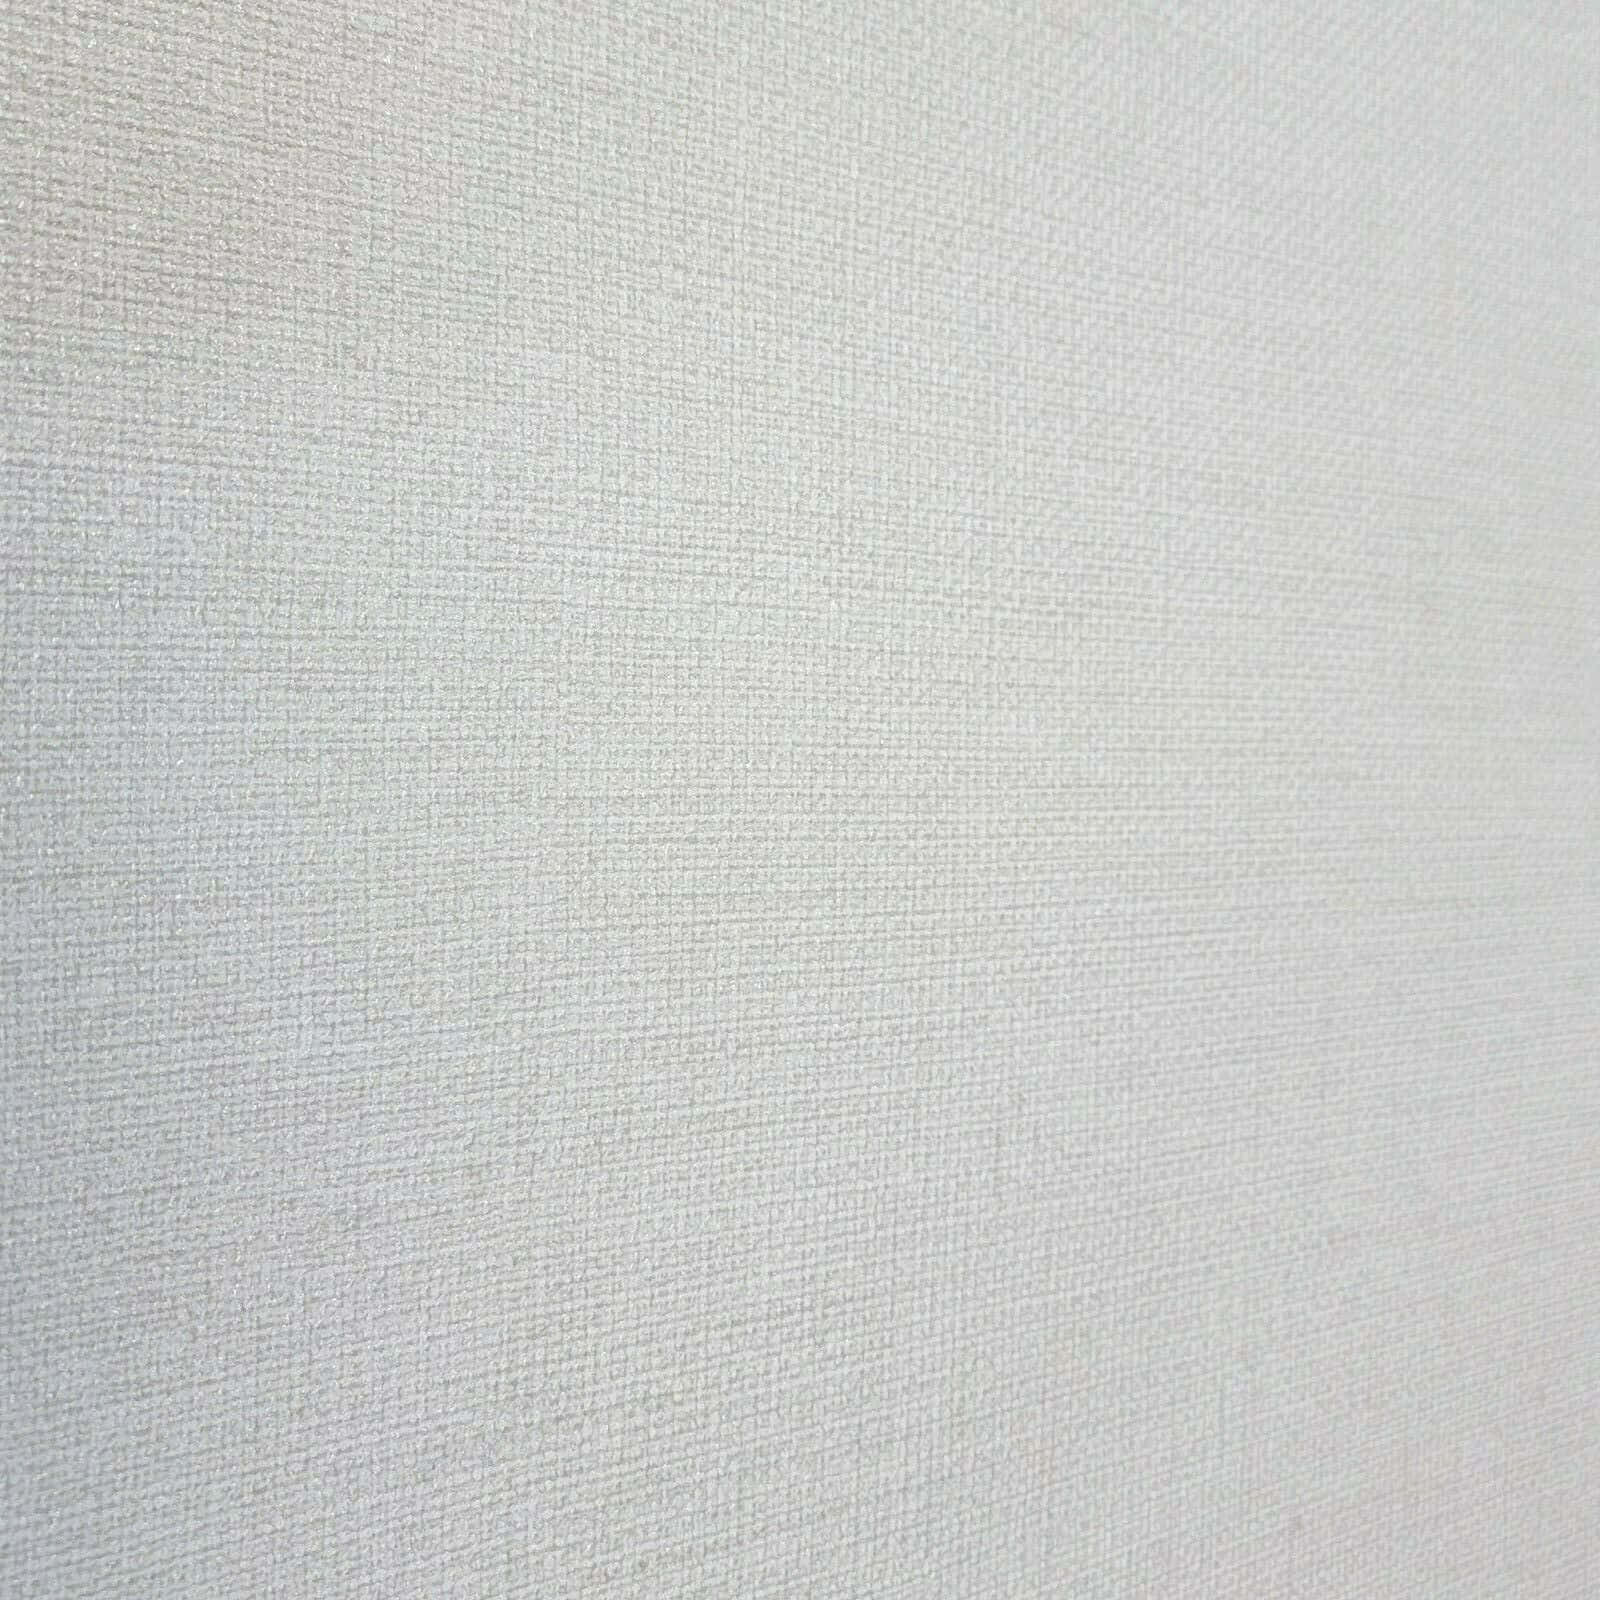 Simple yet stylish white plain background